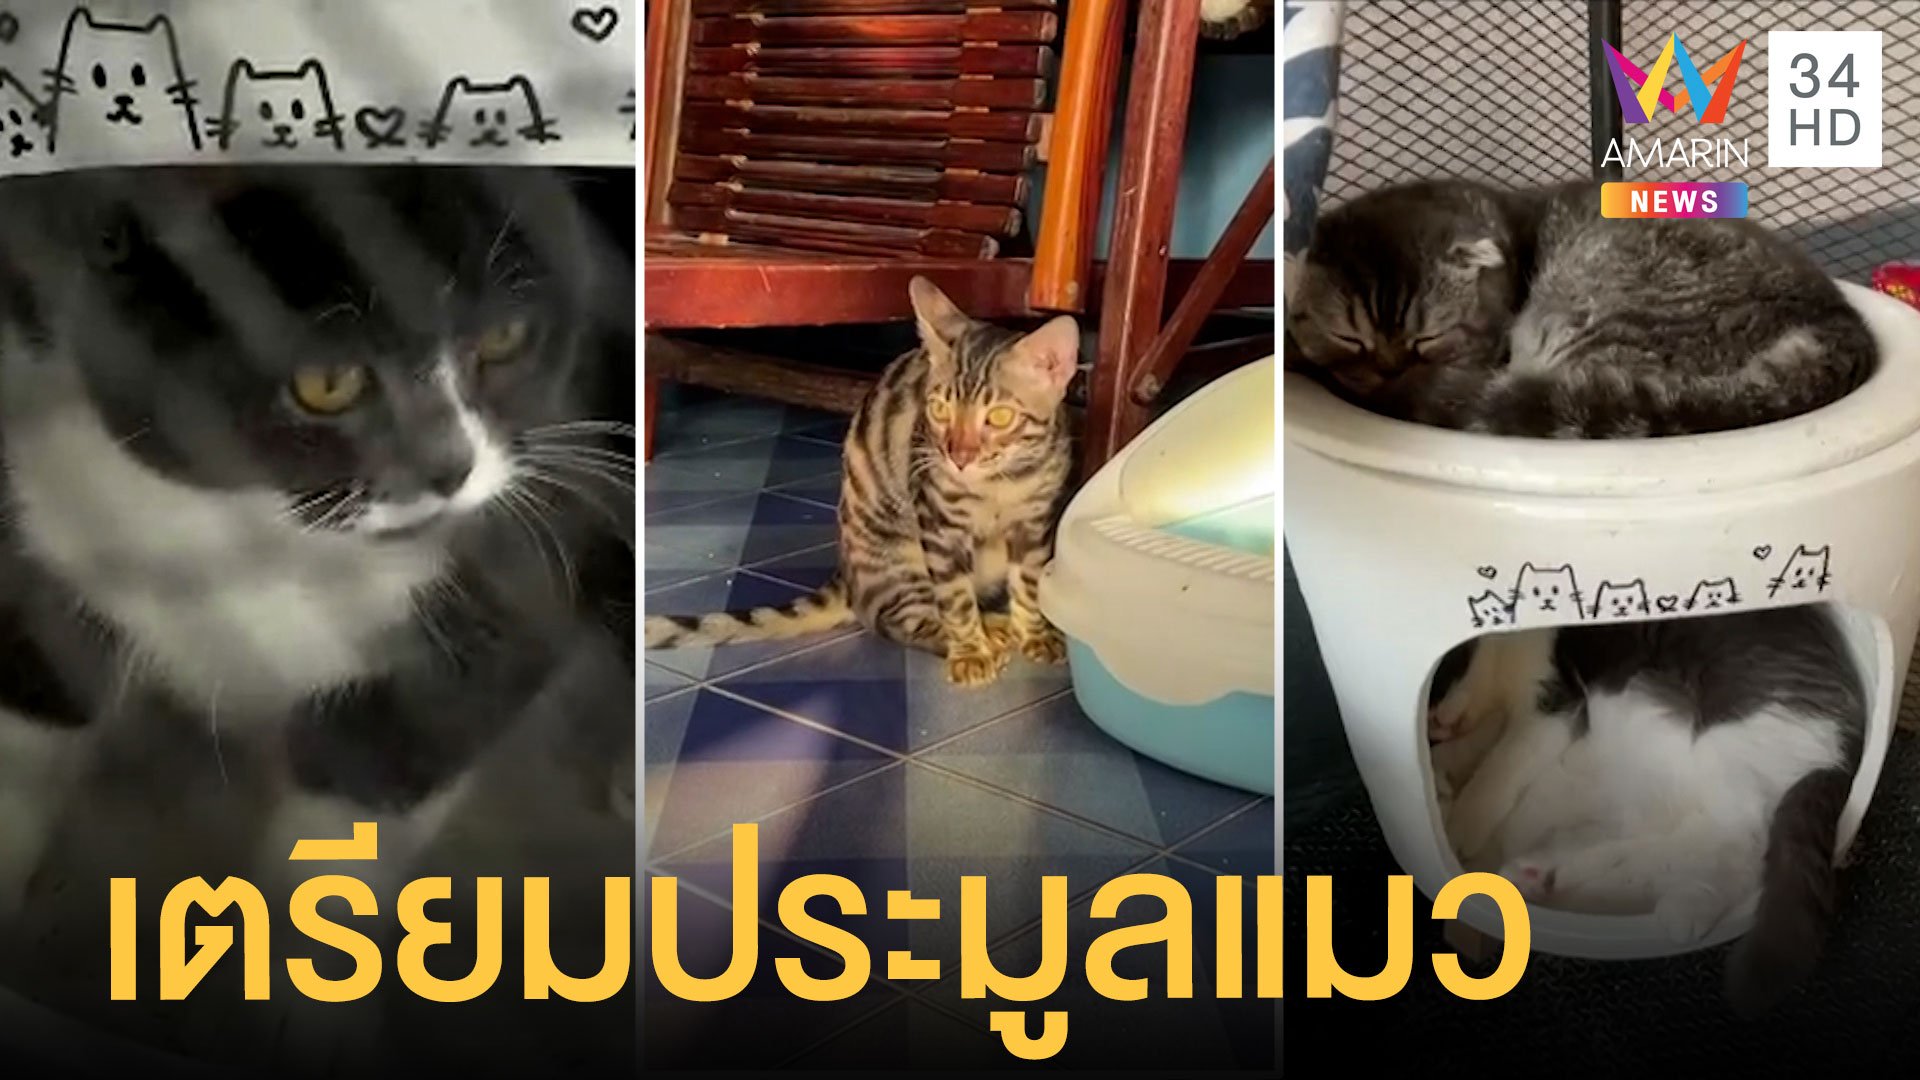 เตรียมเปิดประมูลแมว 6 ตัว ของกลางเครือข่ายยาดกุ๊กระยอง | ข่าวอรุณอมรินทร์ | 23 เม.ย. 64 | AMARIN TVHD34